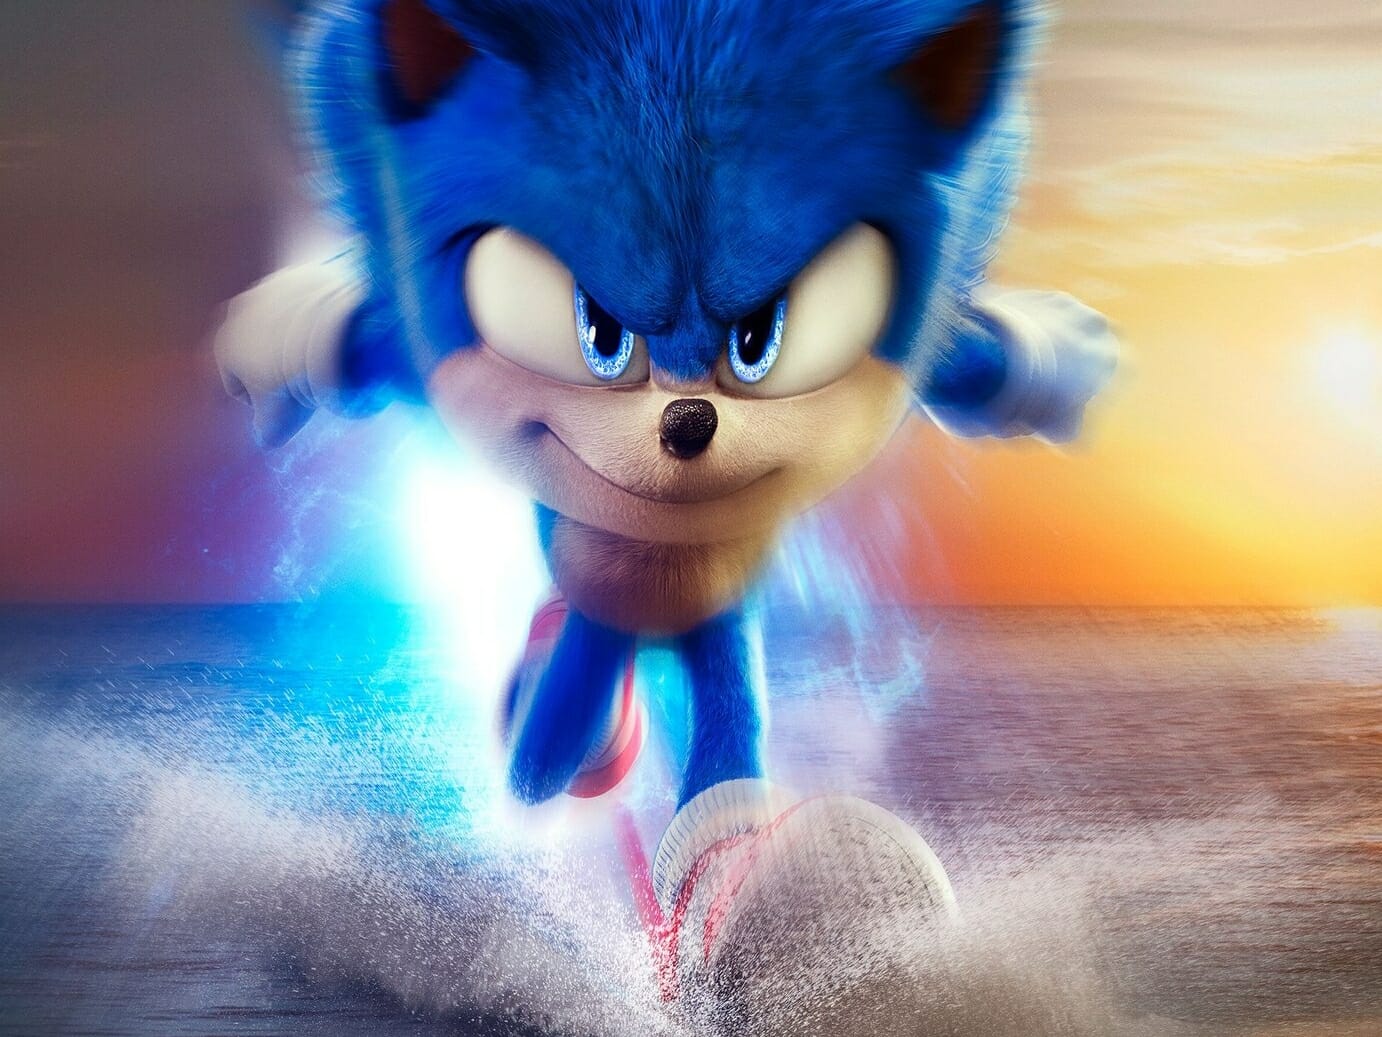 Sonic 2 já está em cartaz nos cinemas